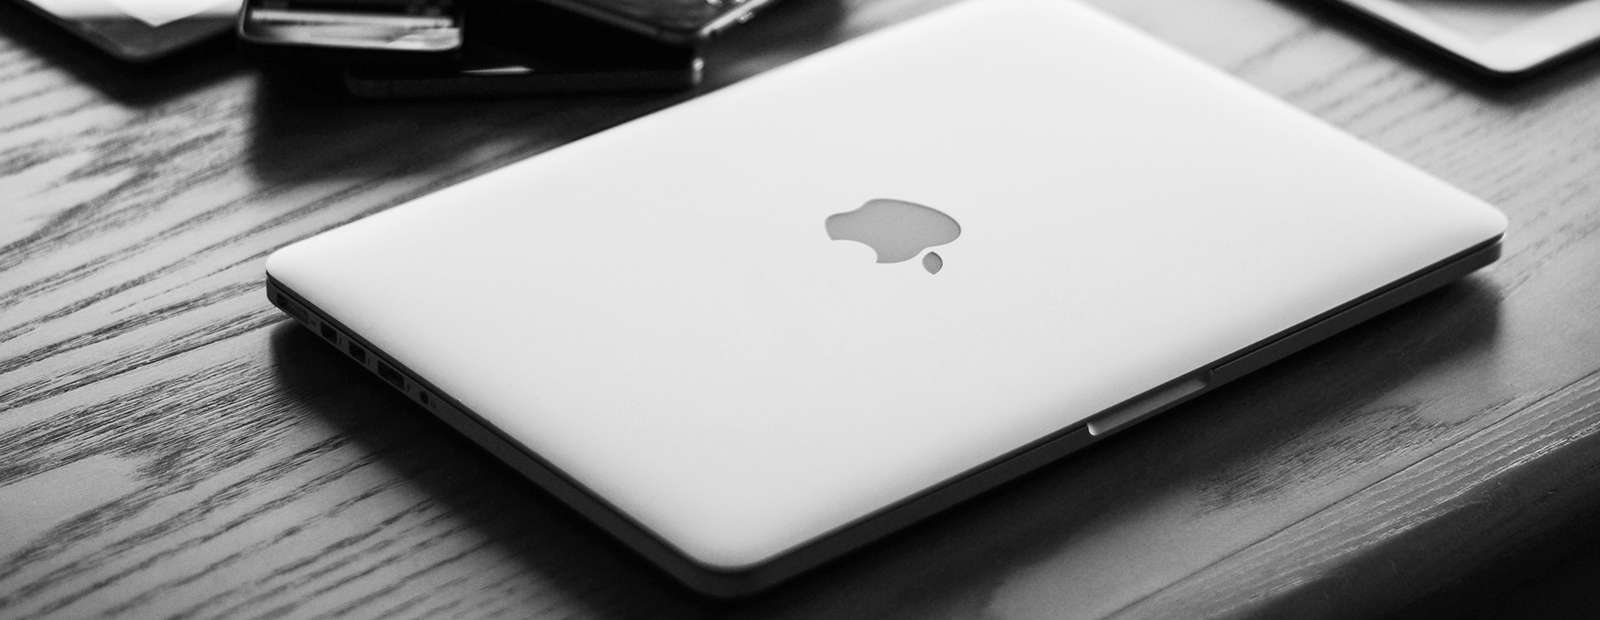 MacBook Air с мини-светодиодным дисплеем